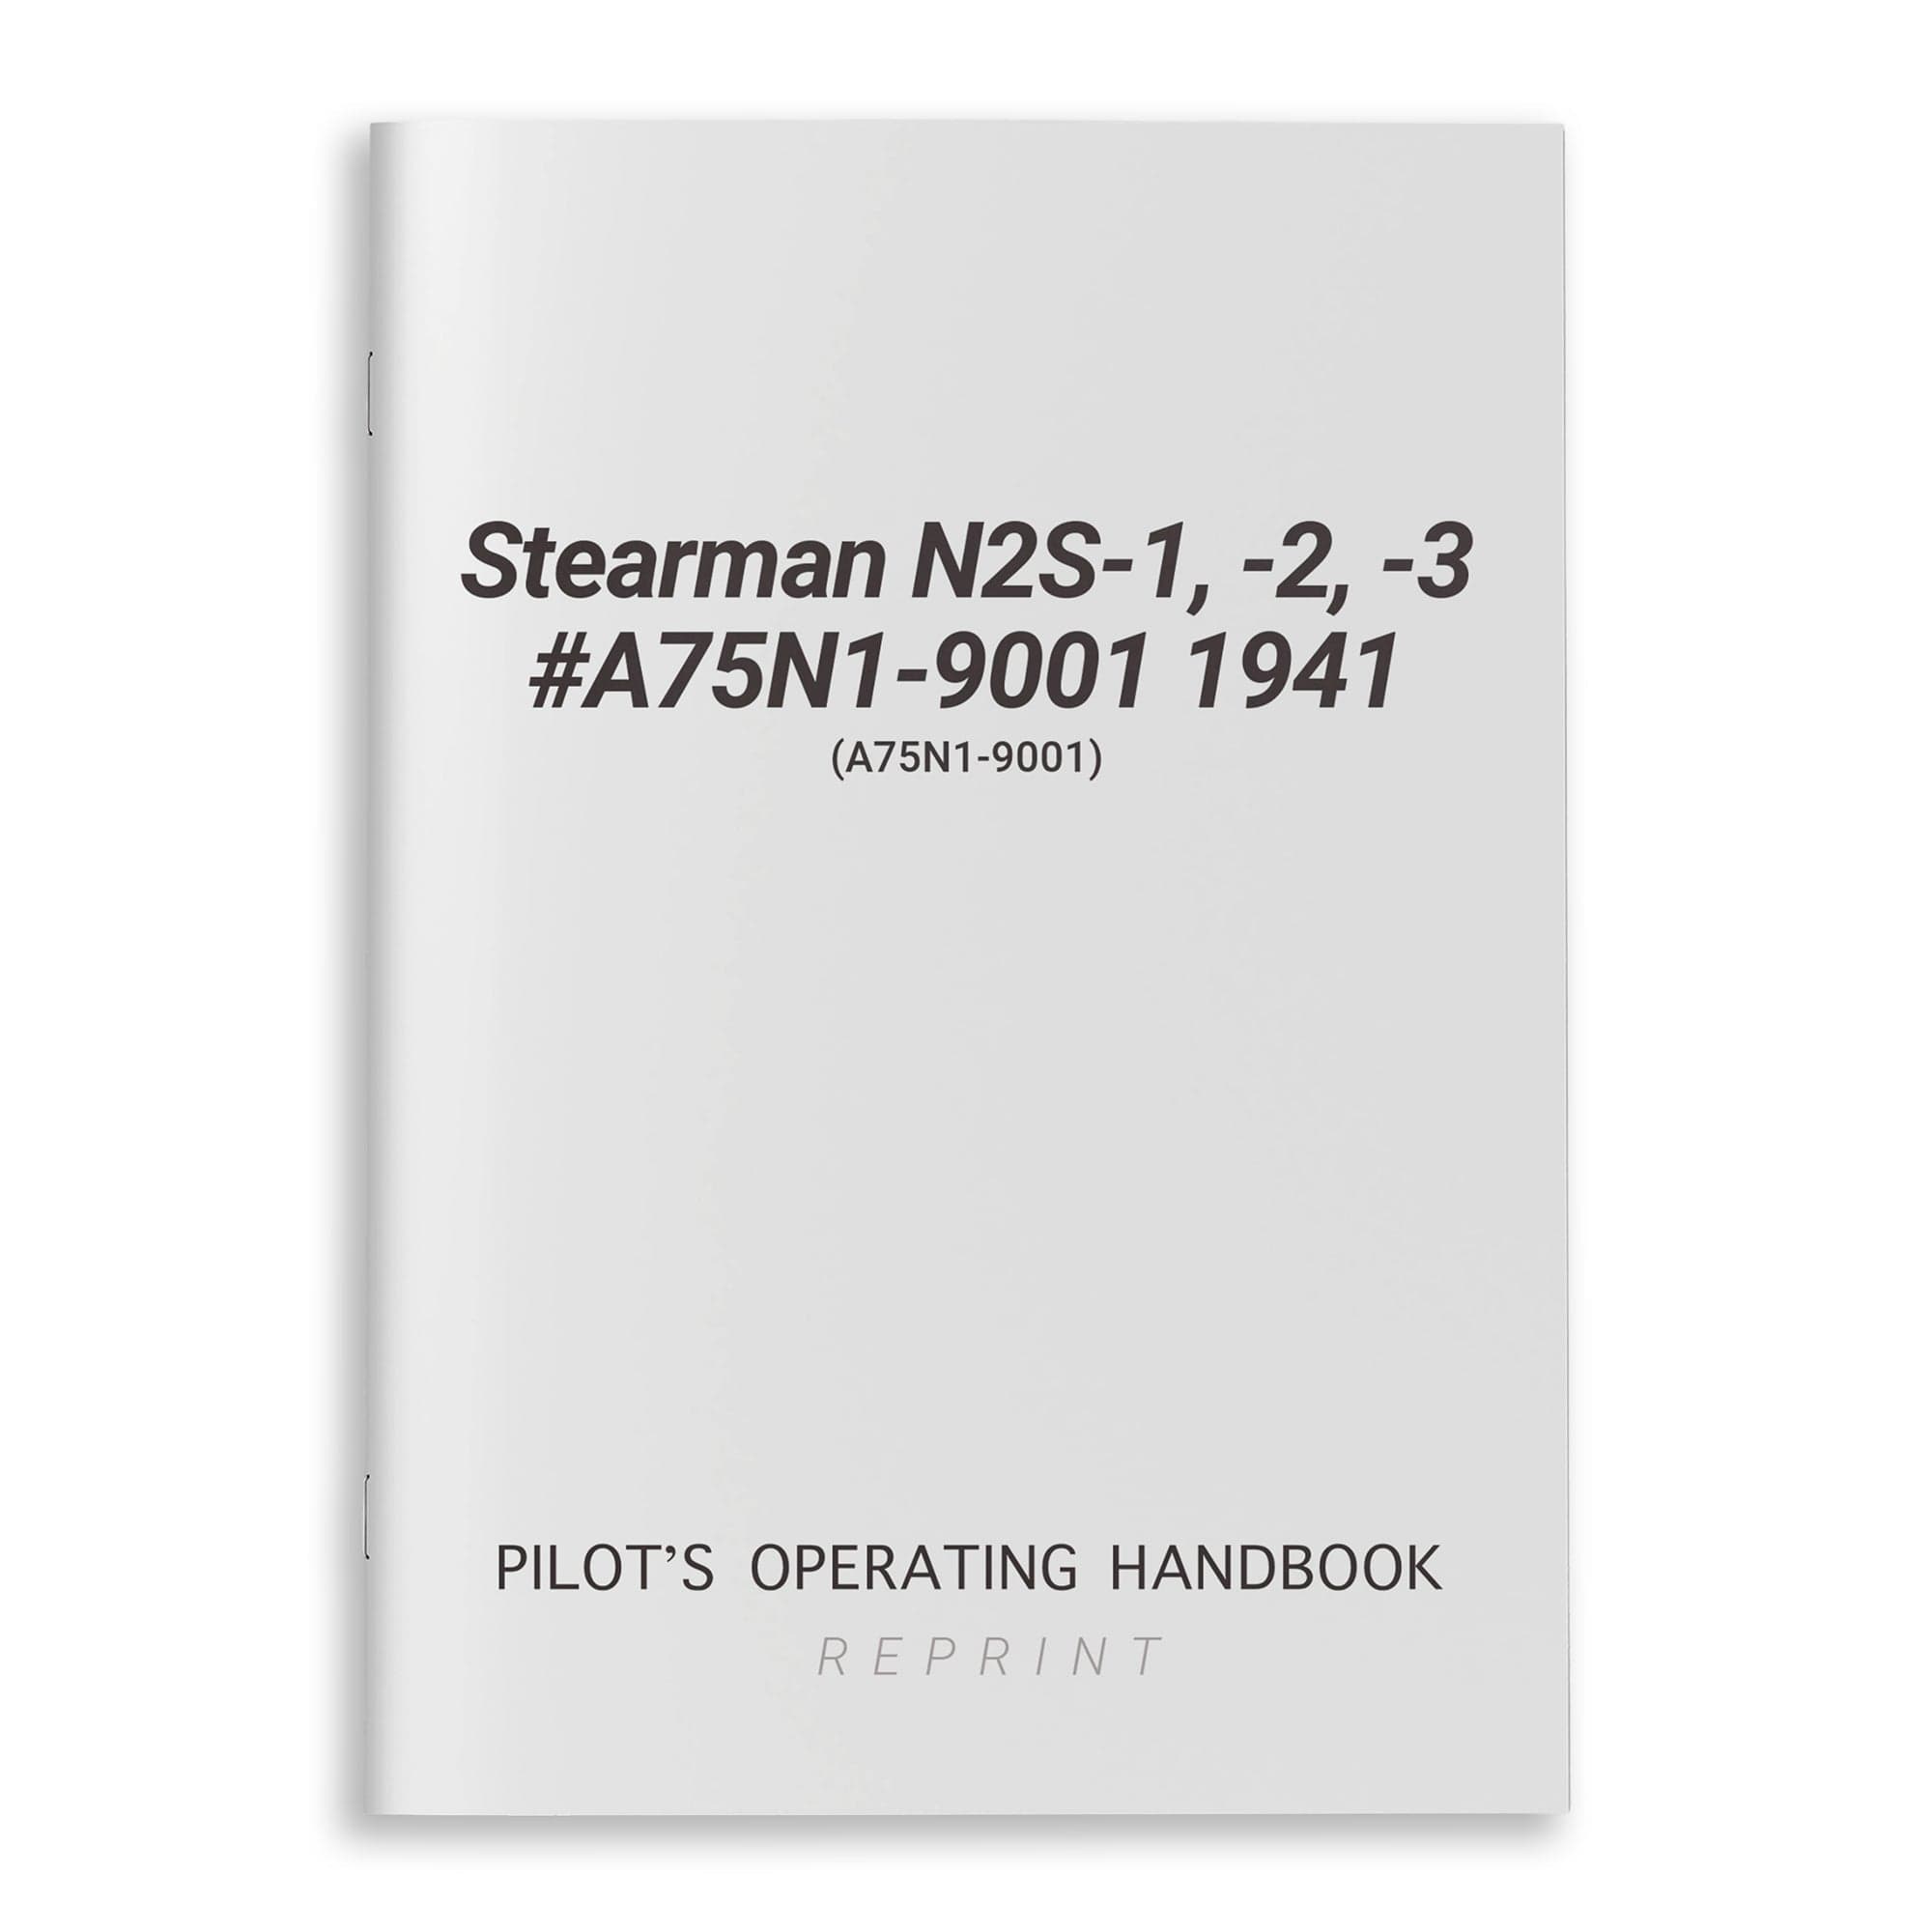 Stearman N2S-1, -2, -3 #A75N1-9001 1941 POH (A75N1-9001)